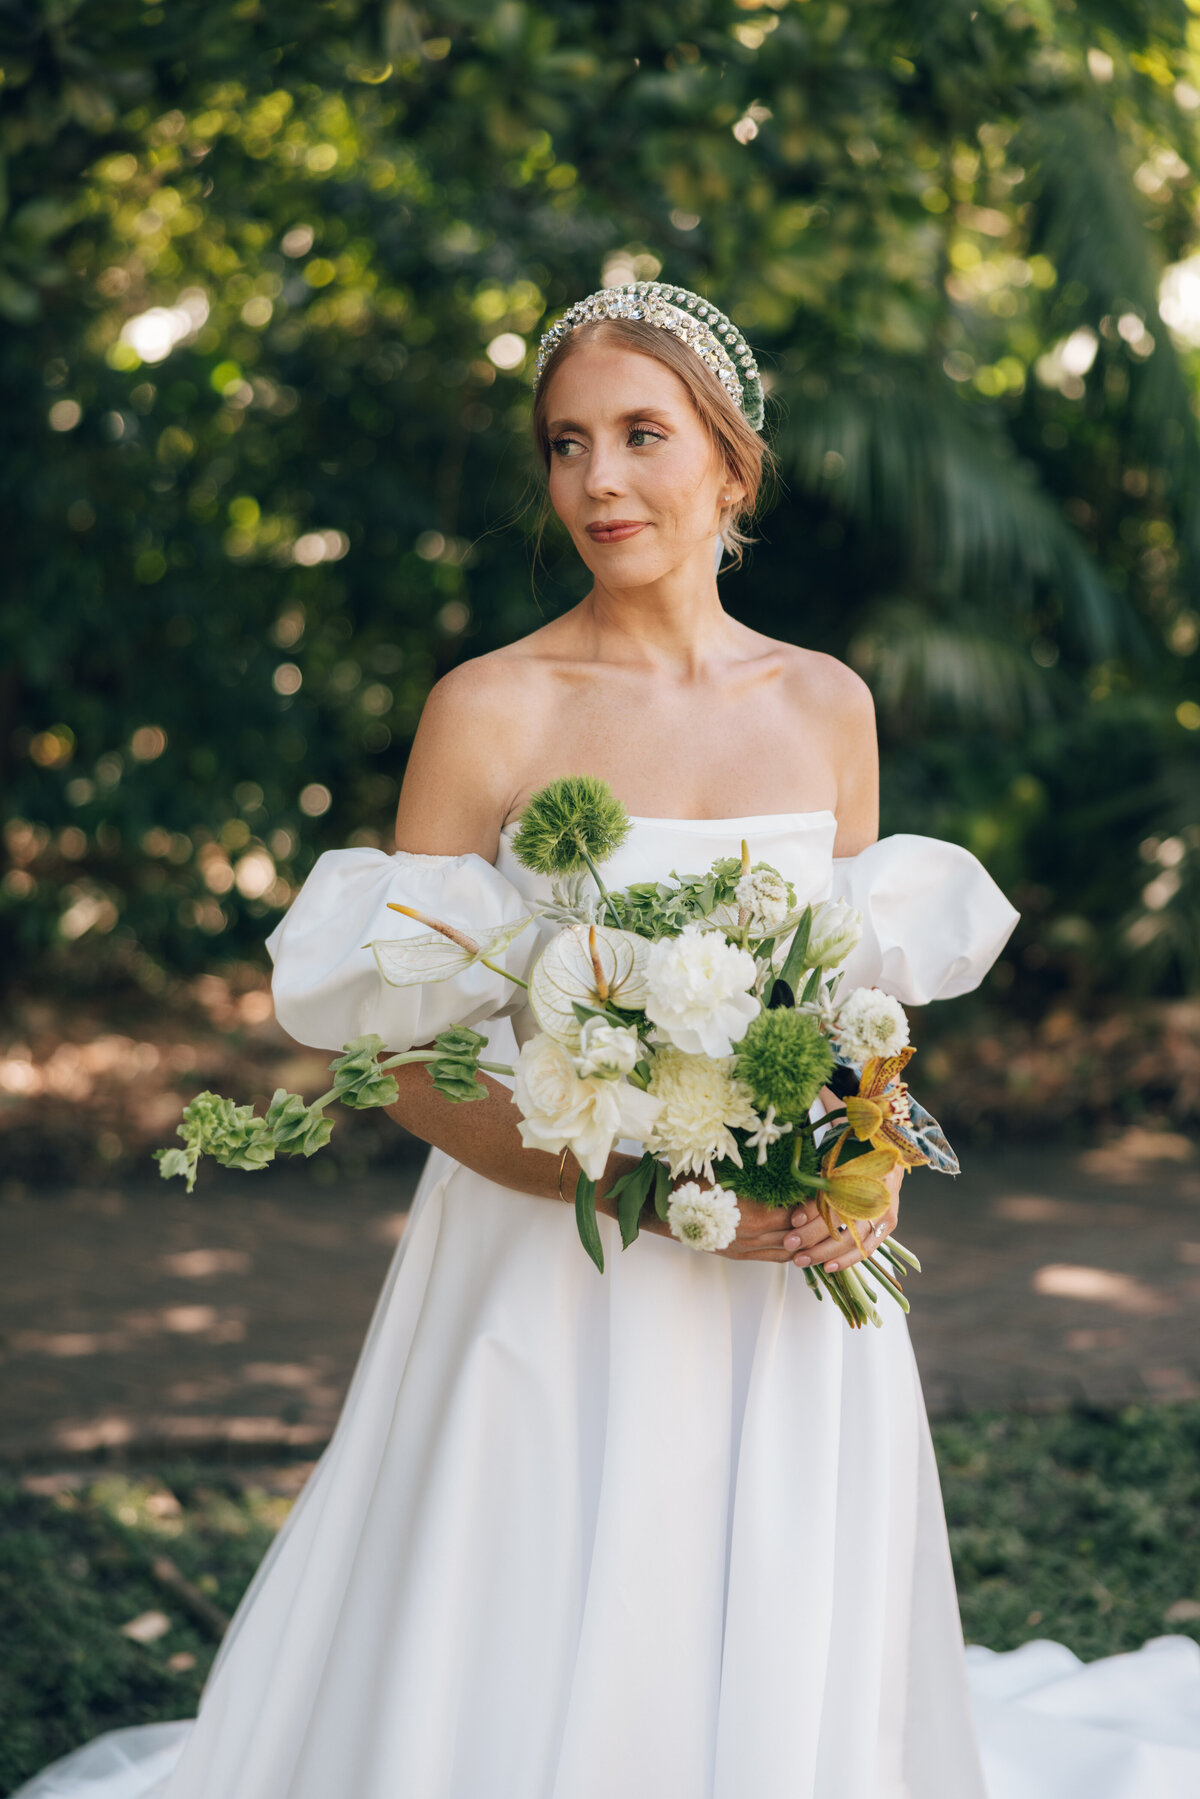 fairchild-botanical-garden-anti-bride-wedding-miami-florida-19